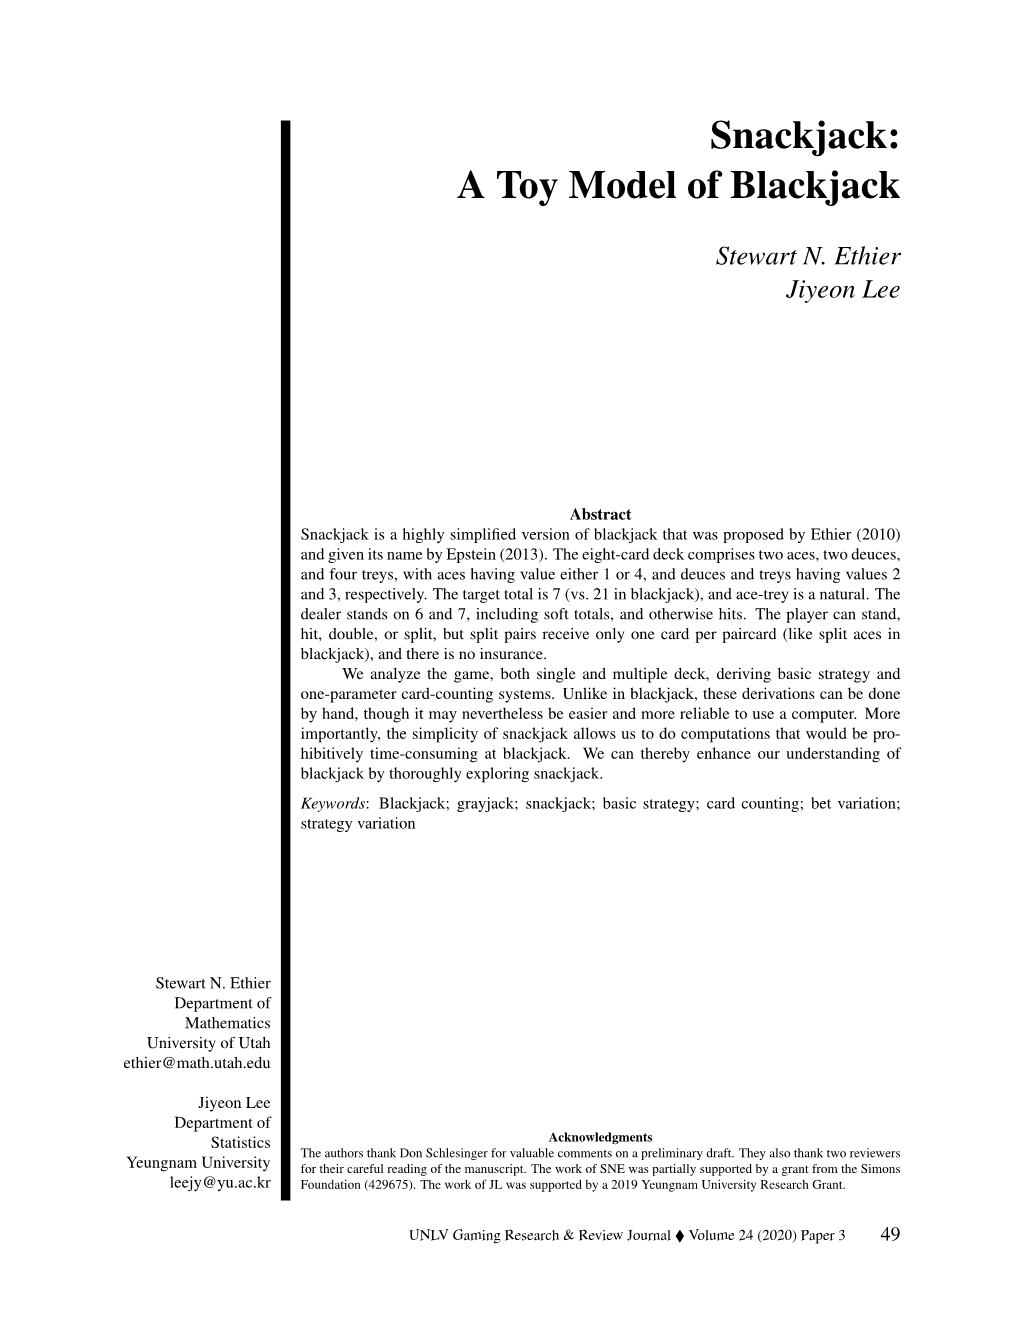 A Toy Model of Blackjack